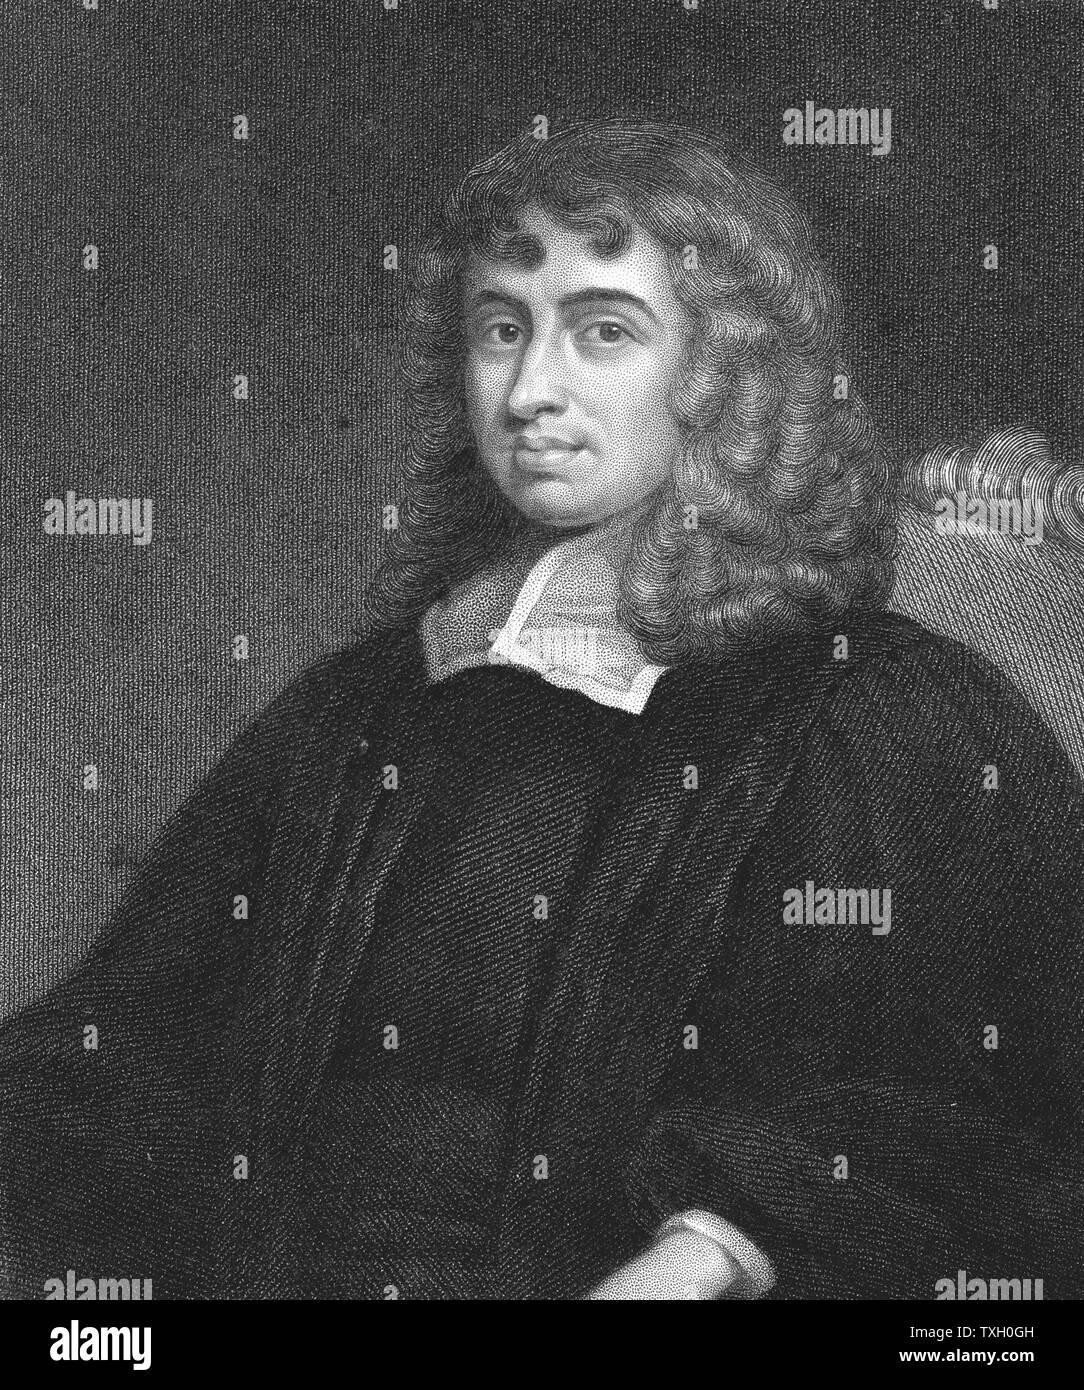 Isaac Barrow (1630-1677) Englischer Mathematiker und Kleriker. Lucasian Professor für Mathematik an der Cambridge 1663, trat 1669 weg für Isaac Newton zu machen. Master des Trinity College, Cambridge, und Gründer der Bibliothek. Gravur nach Portrait Stockfoto